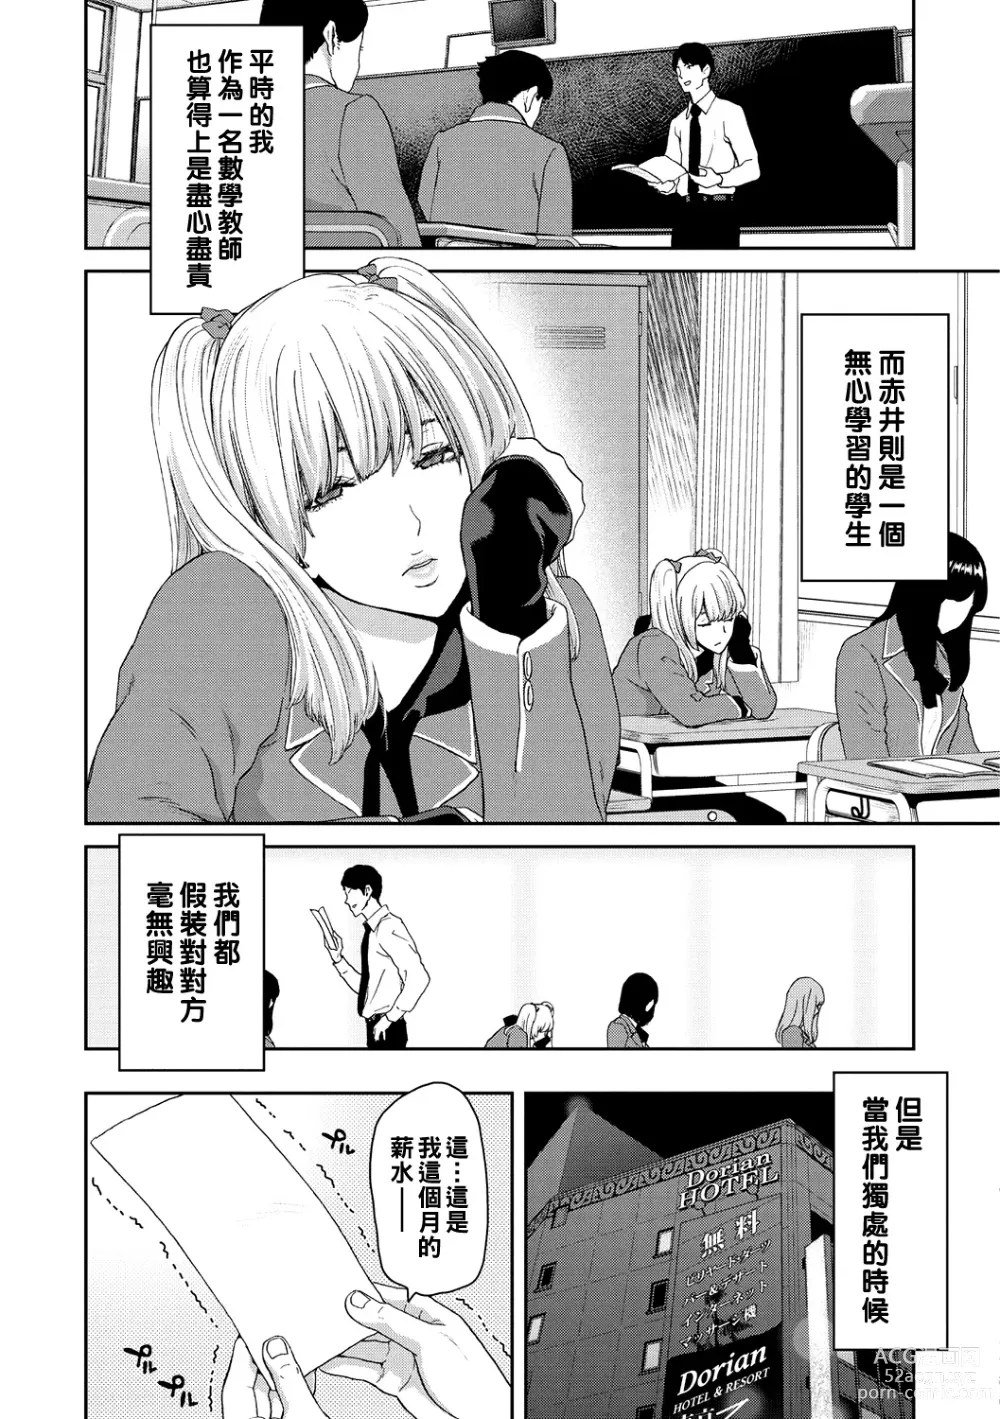 Page 7 of manga Shiyokka Hametsu SEX